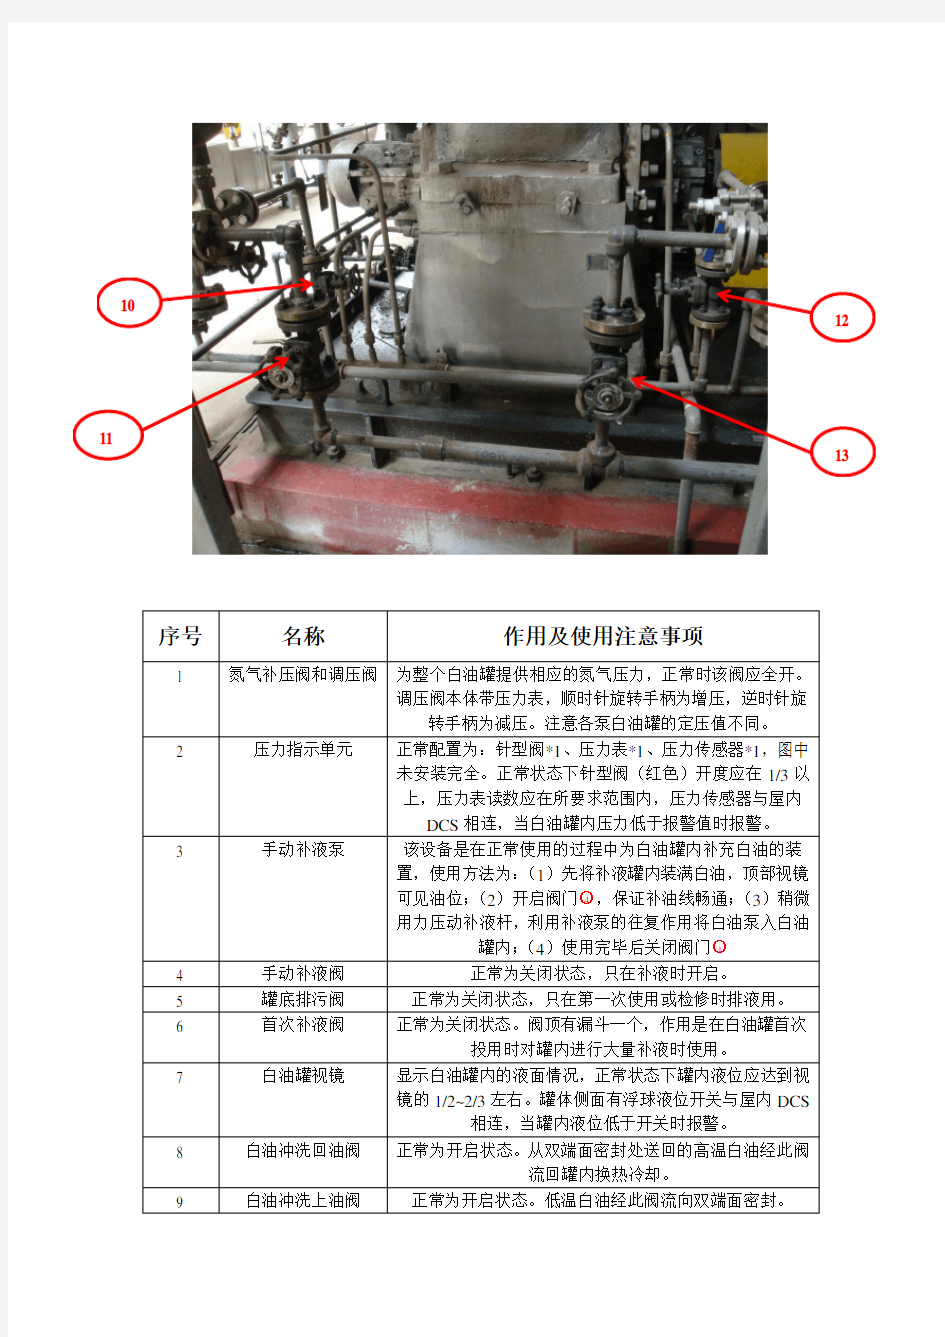 双端面密封改造机泵操作指导书